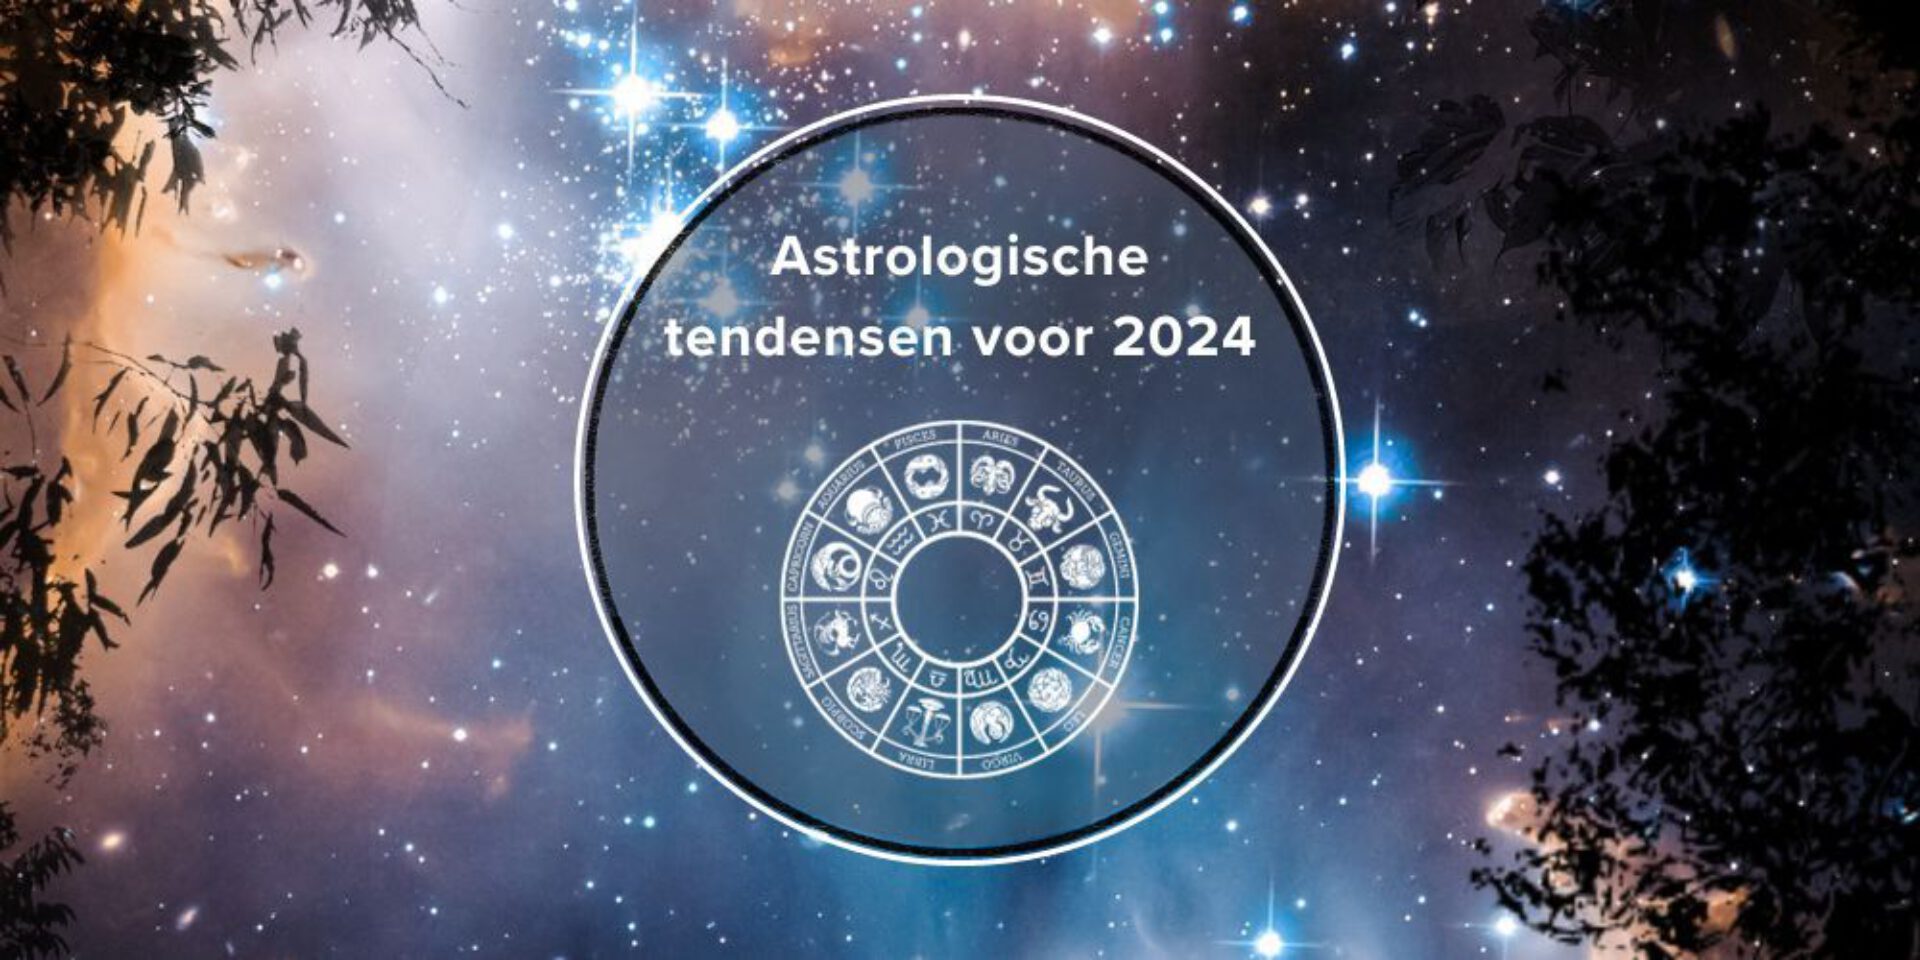 Astrologische tendensen voor 2024